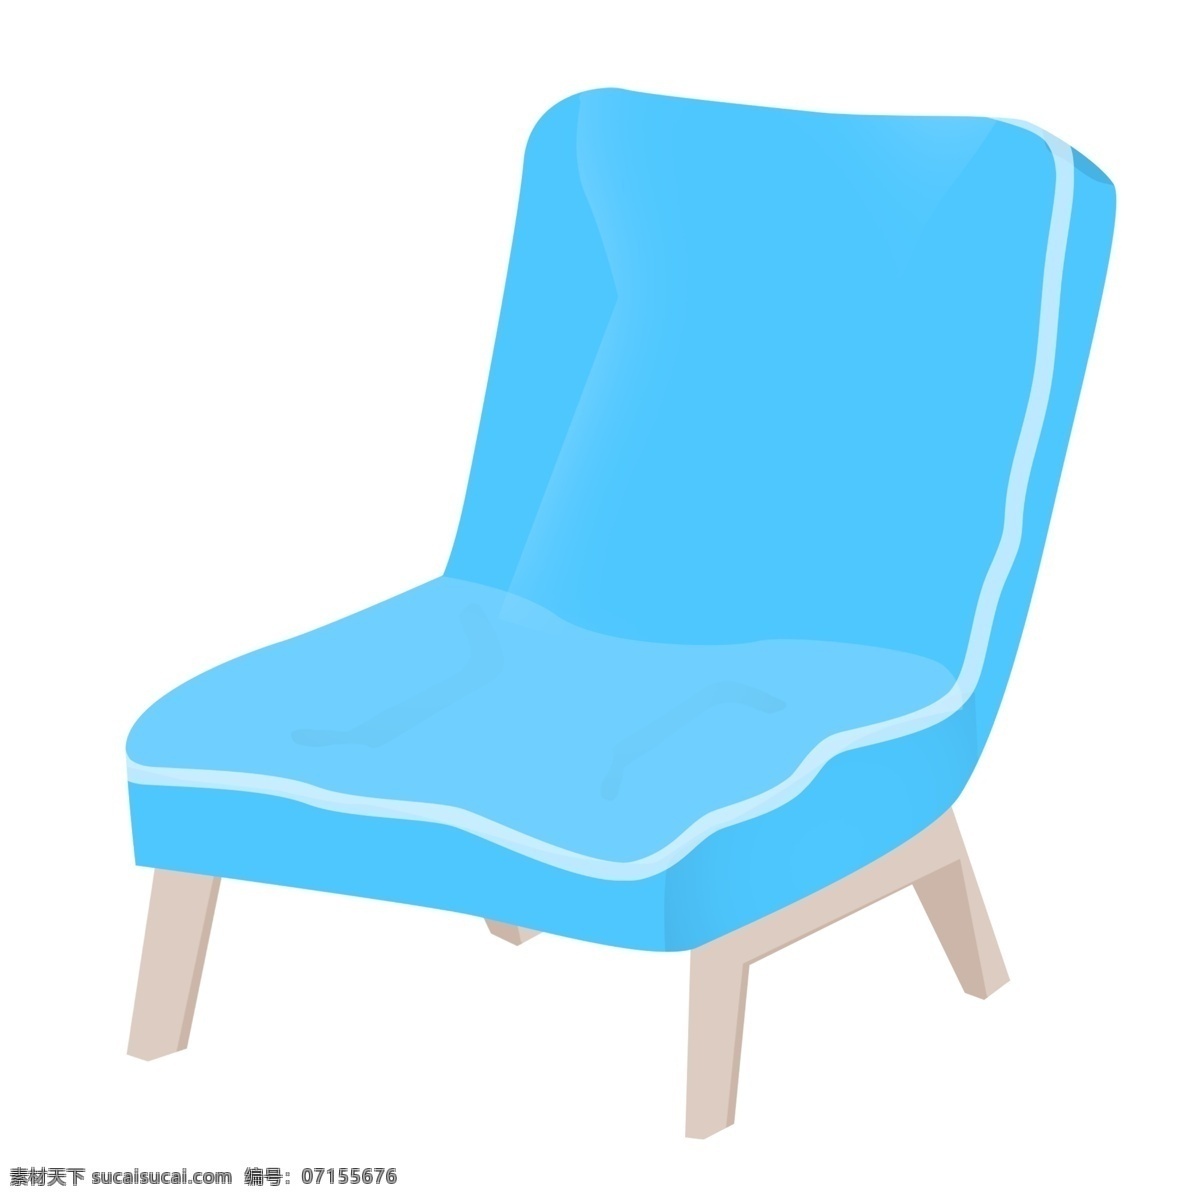 漂亮 椅子 装饰 插画 漂亮的椅子 蓝色的椅子 创意椅子 立体椅子 精美椅子 卡通椅子 家具椅子